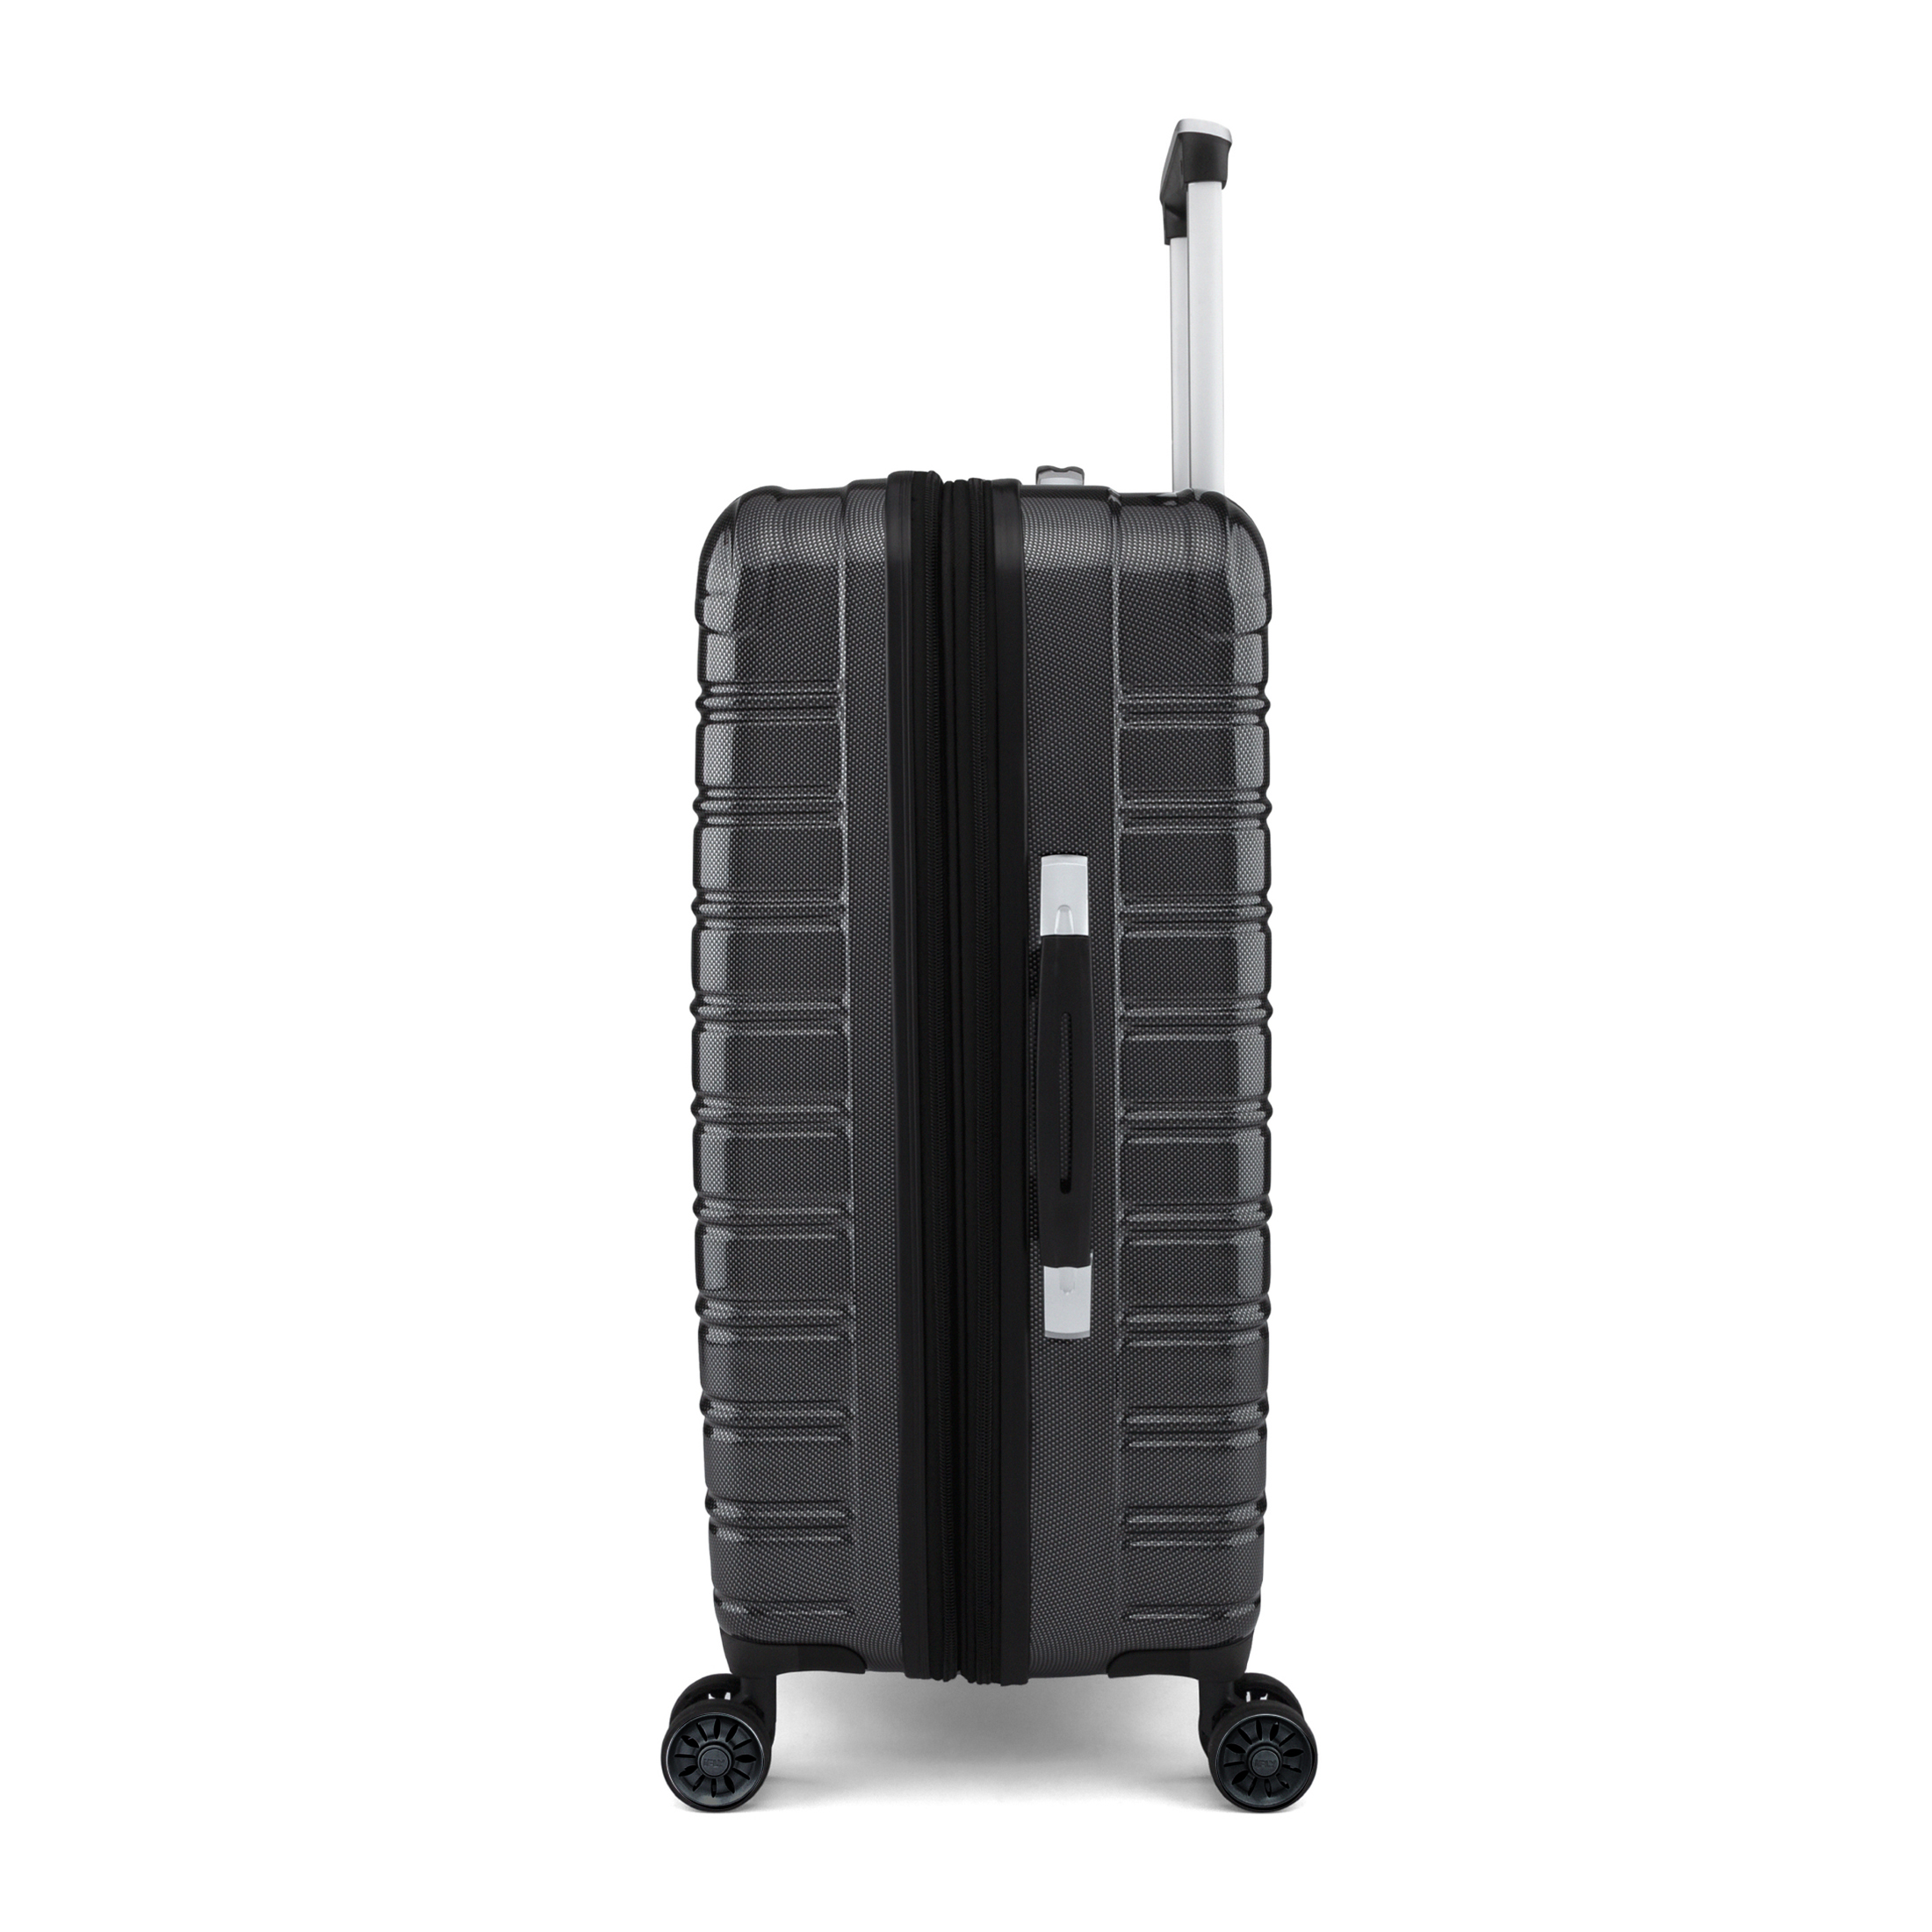 iFLY Hardside Fibertech Luggage 20" Carry-on Luggage, Black - image 5 of 10